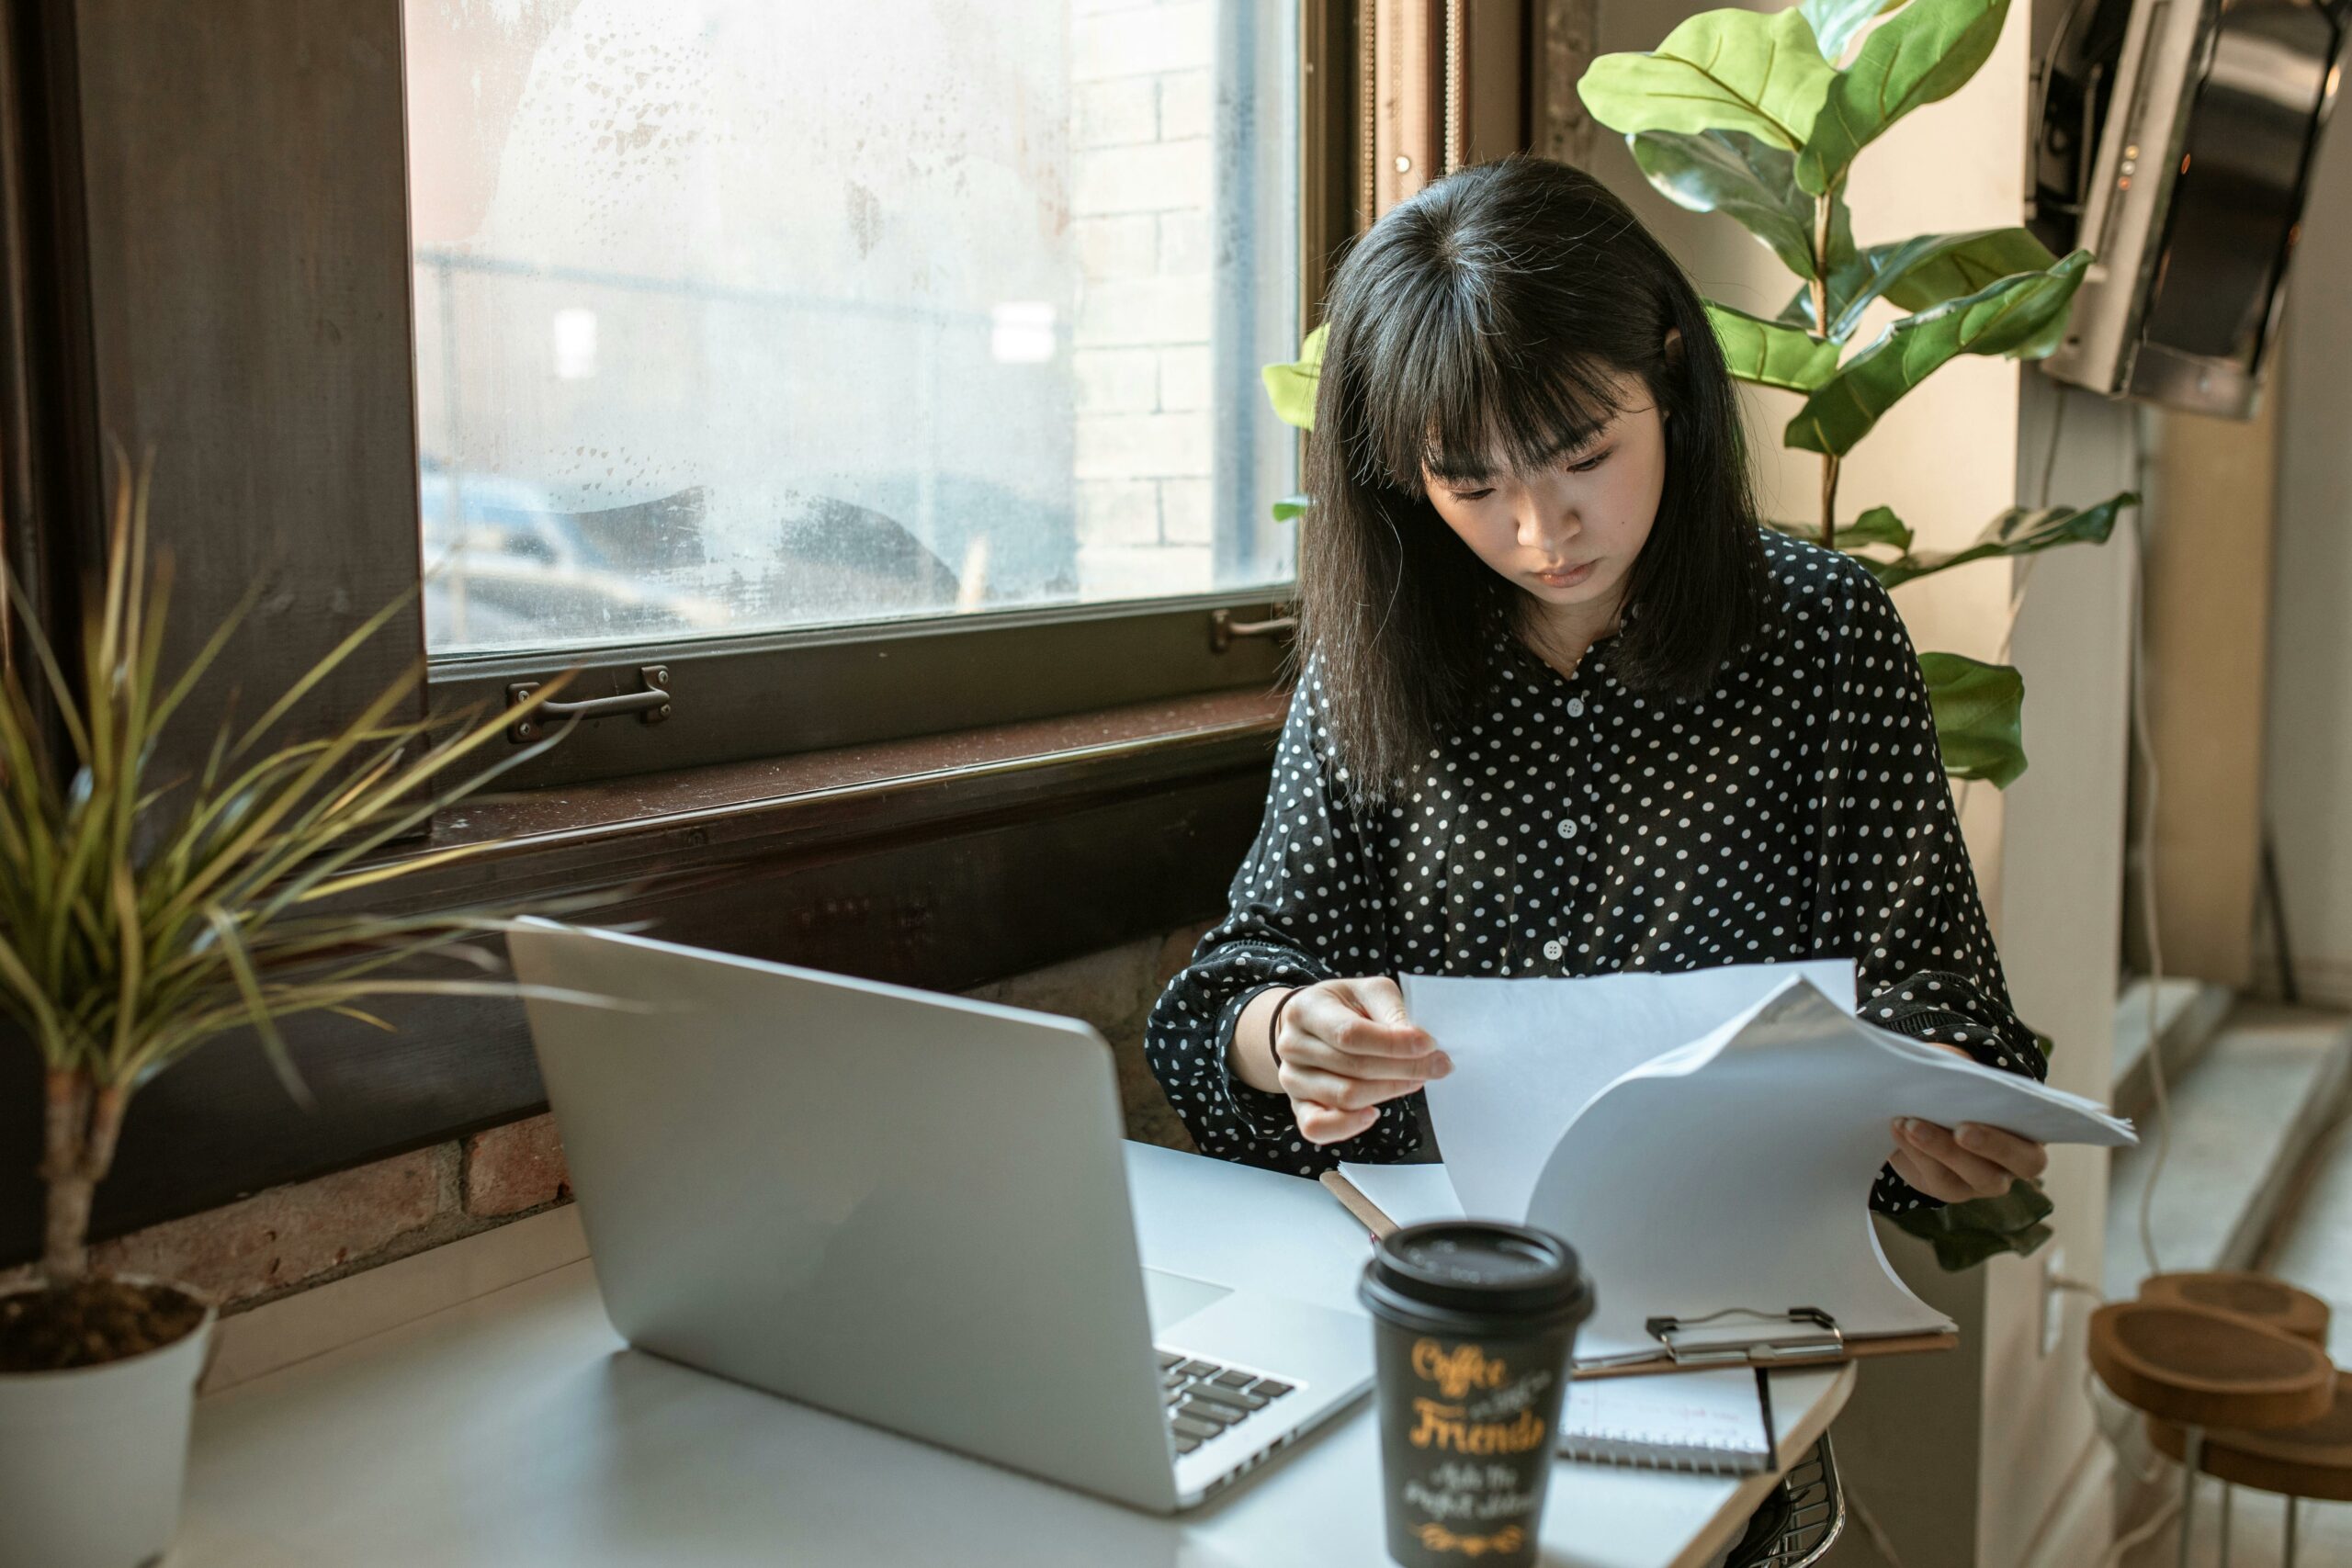 Une femme, assise à un bureau, examine des documents tout en travaillant sur un ordinateur portable, avec une plante en pot et un gobelet de café à côté, dans un environnement lumineux près d'une fenêtre.